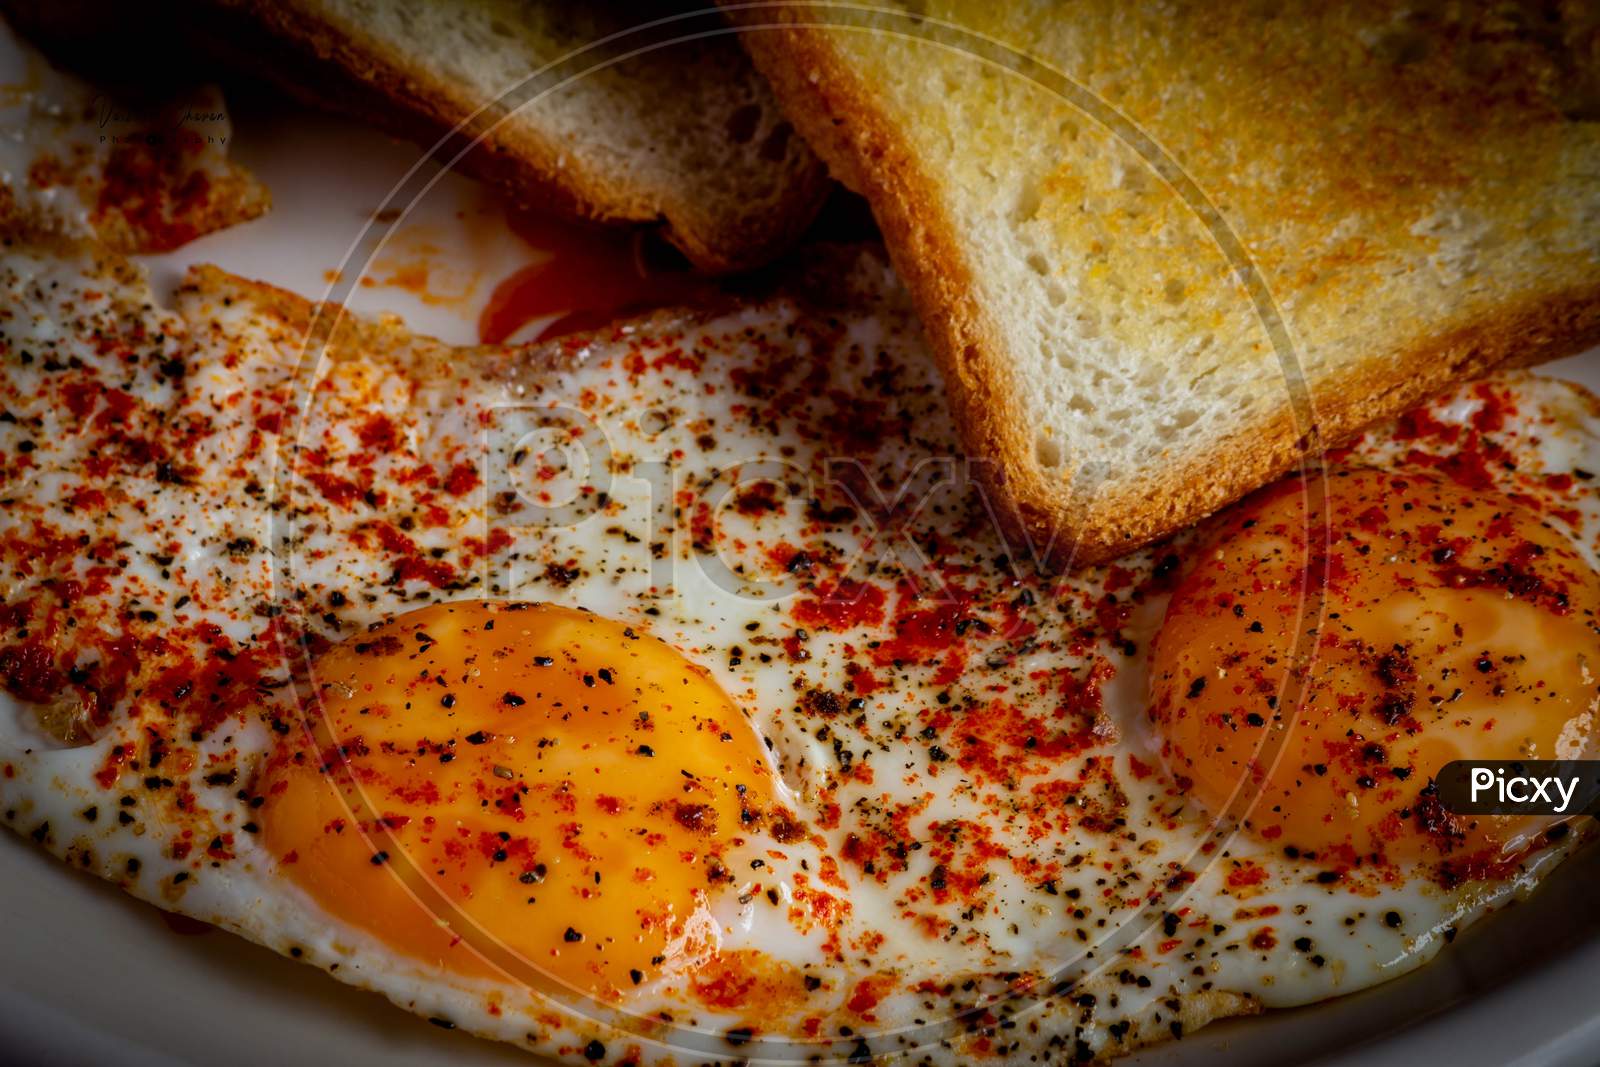 Eggs and toast breakfast